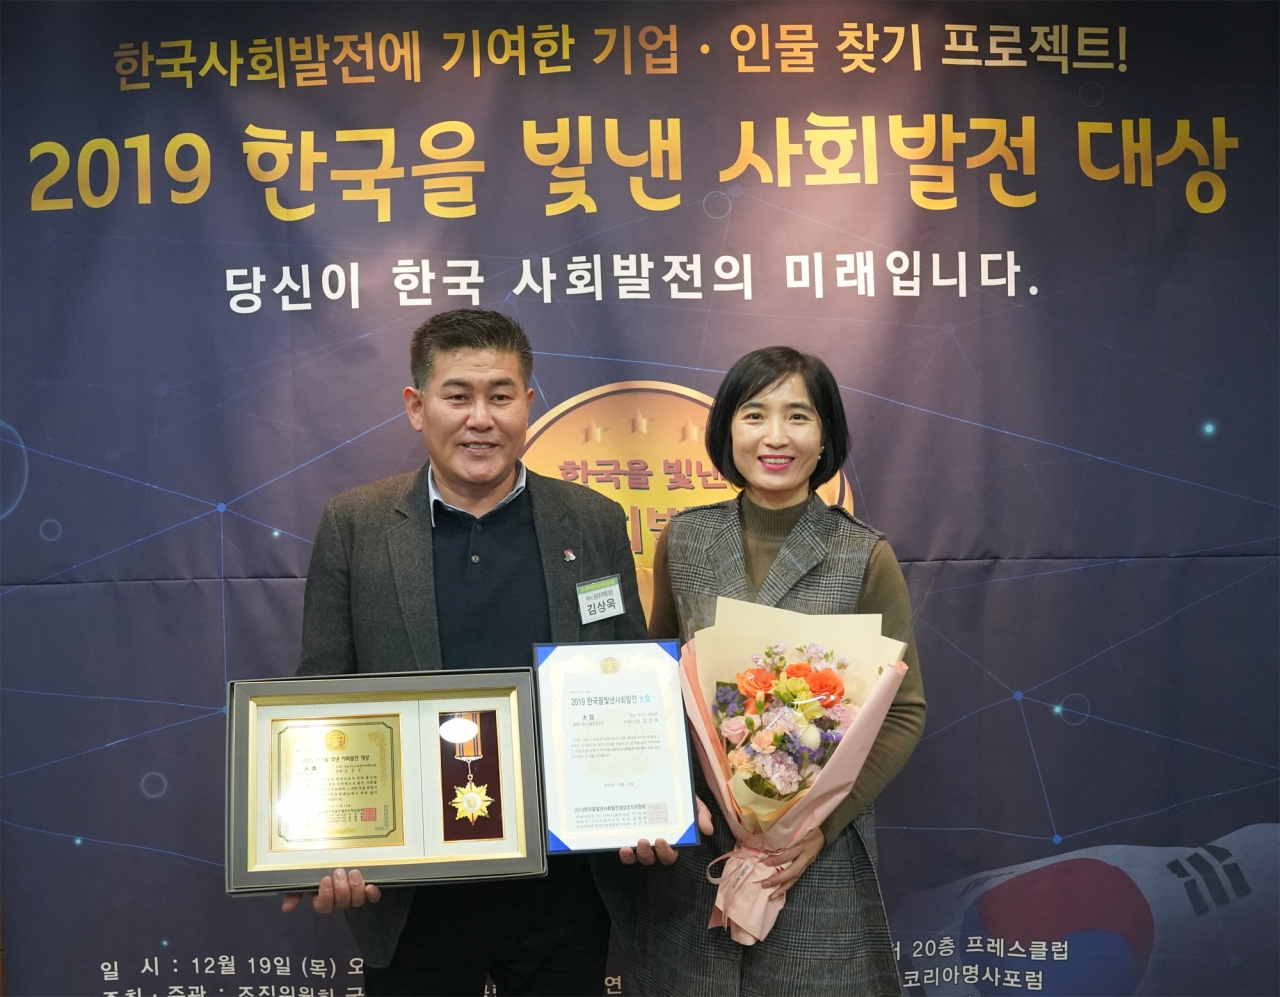 ‘한국을 빛낸 베스트 공무원 대상’을 수상한 여수시청 관광과 김상욱 관광마케팅 팀장.